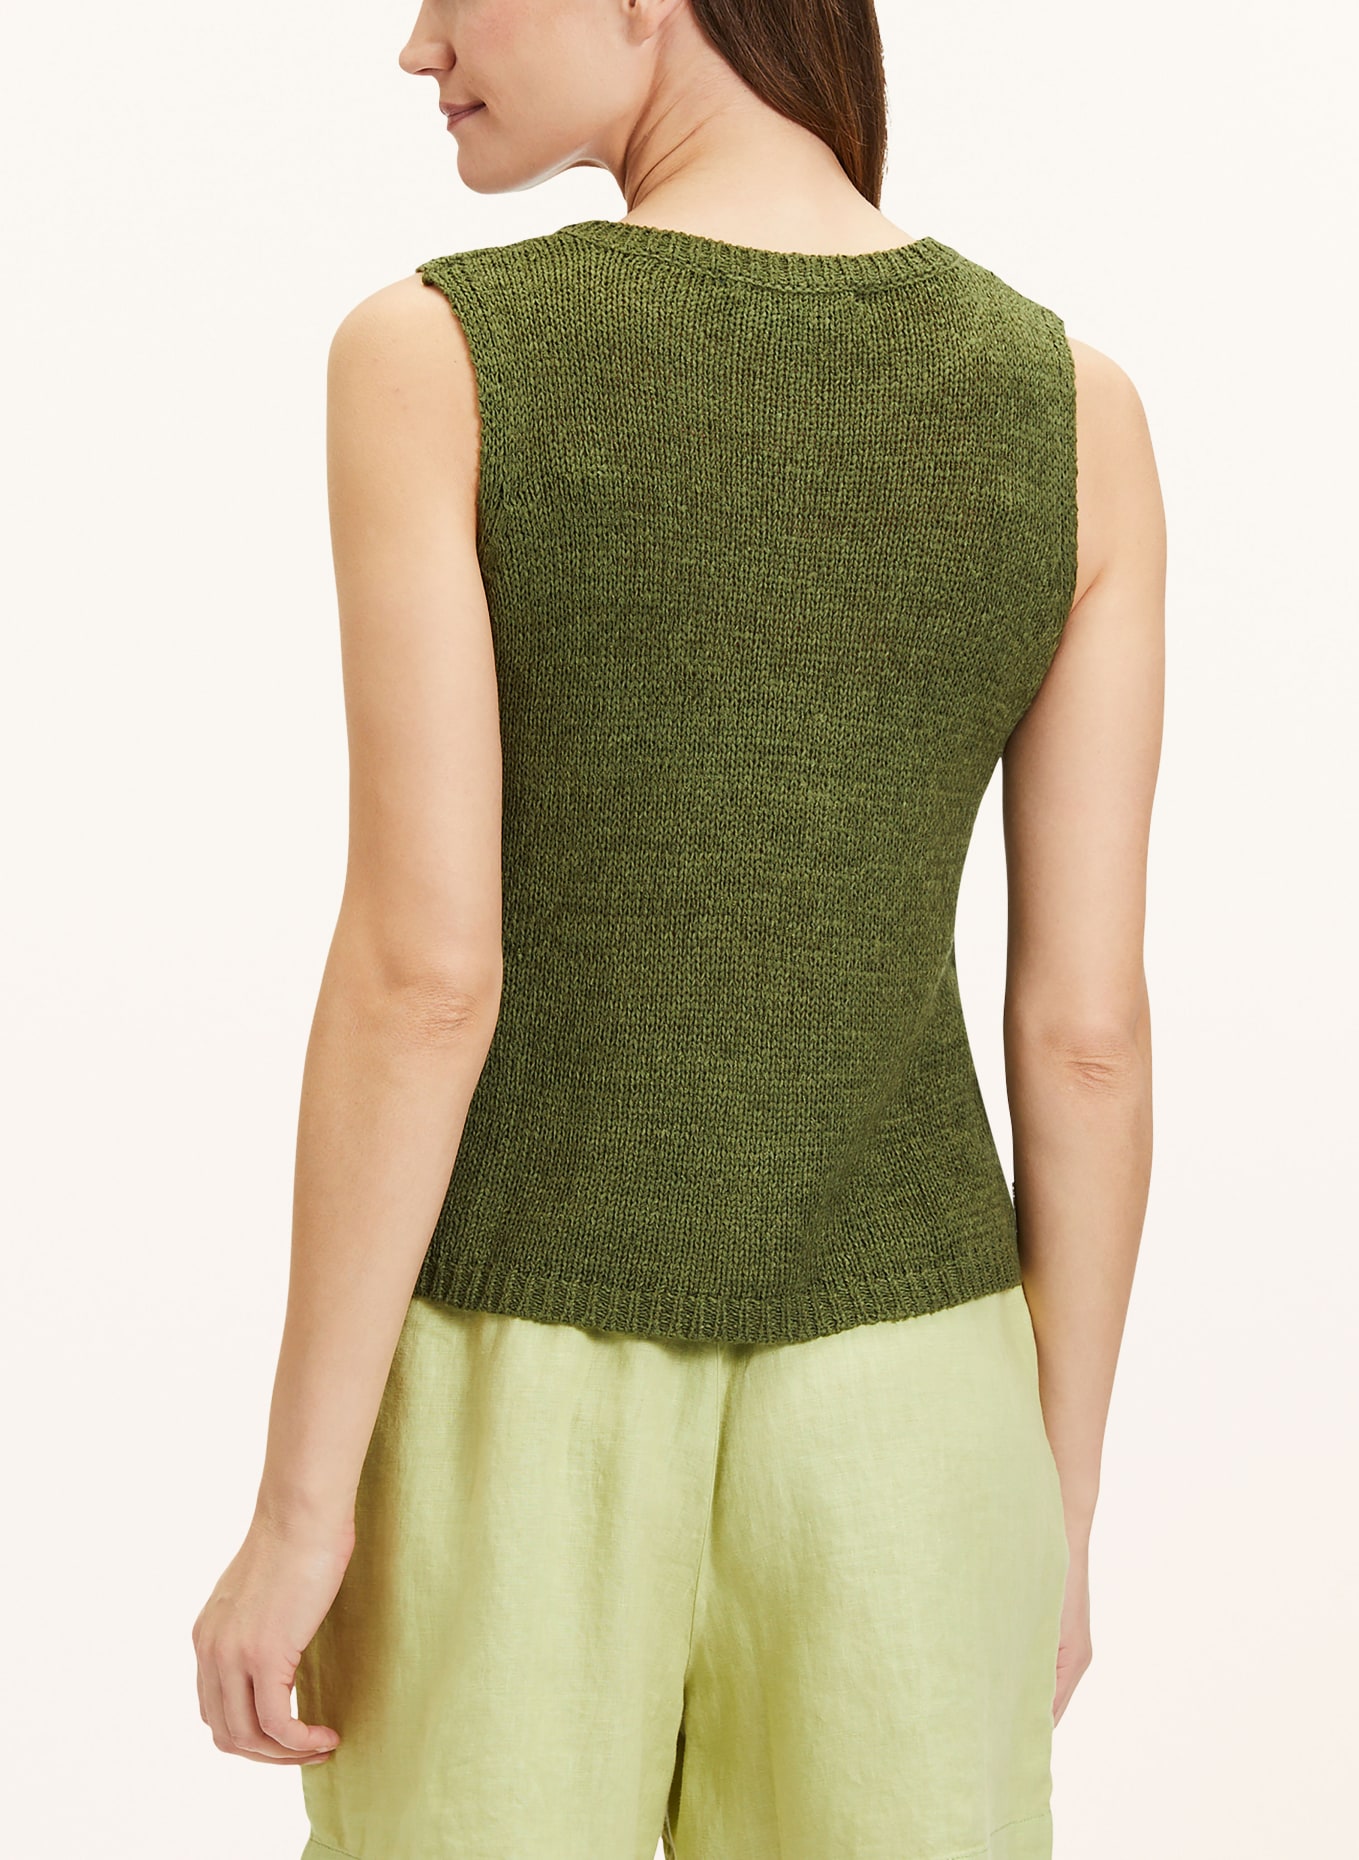 CARTOON Knit top, Color: DARK GREEN (Image 3)